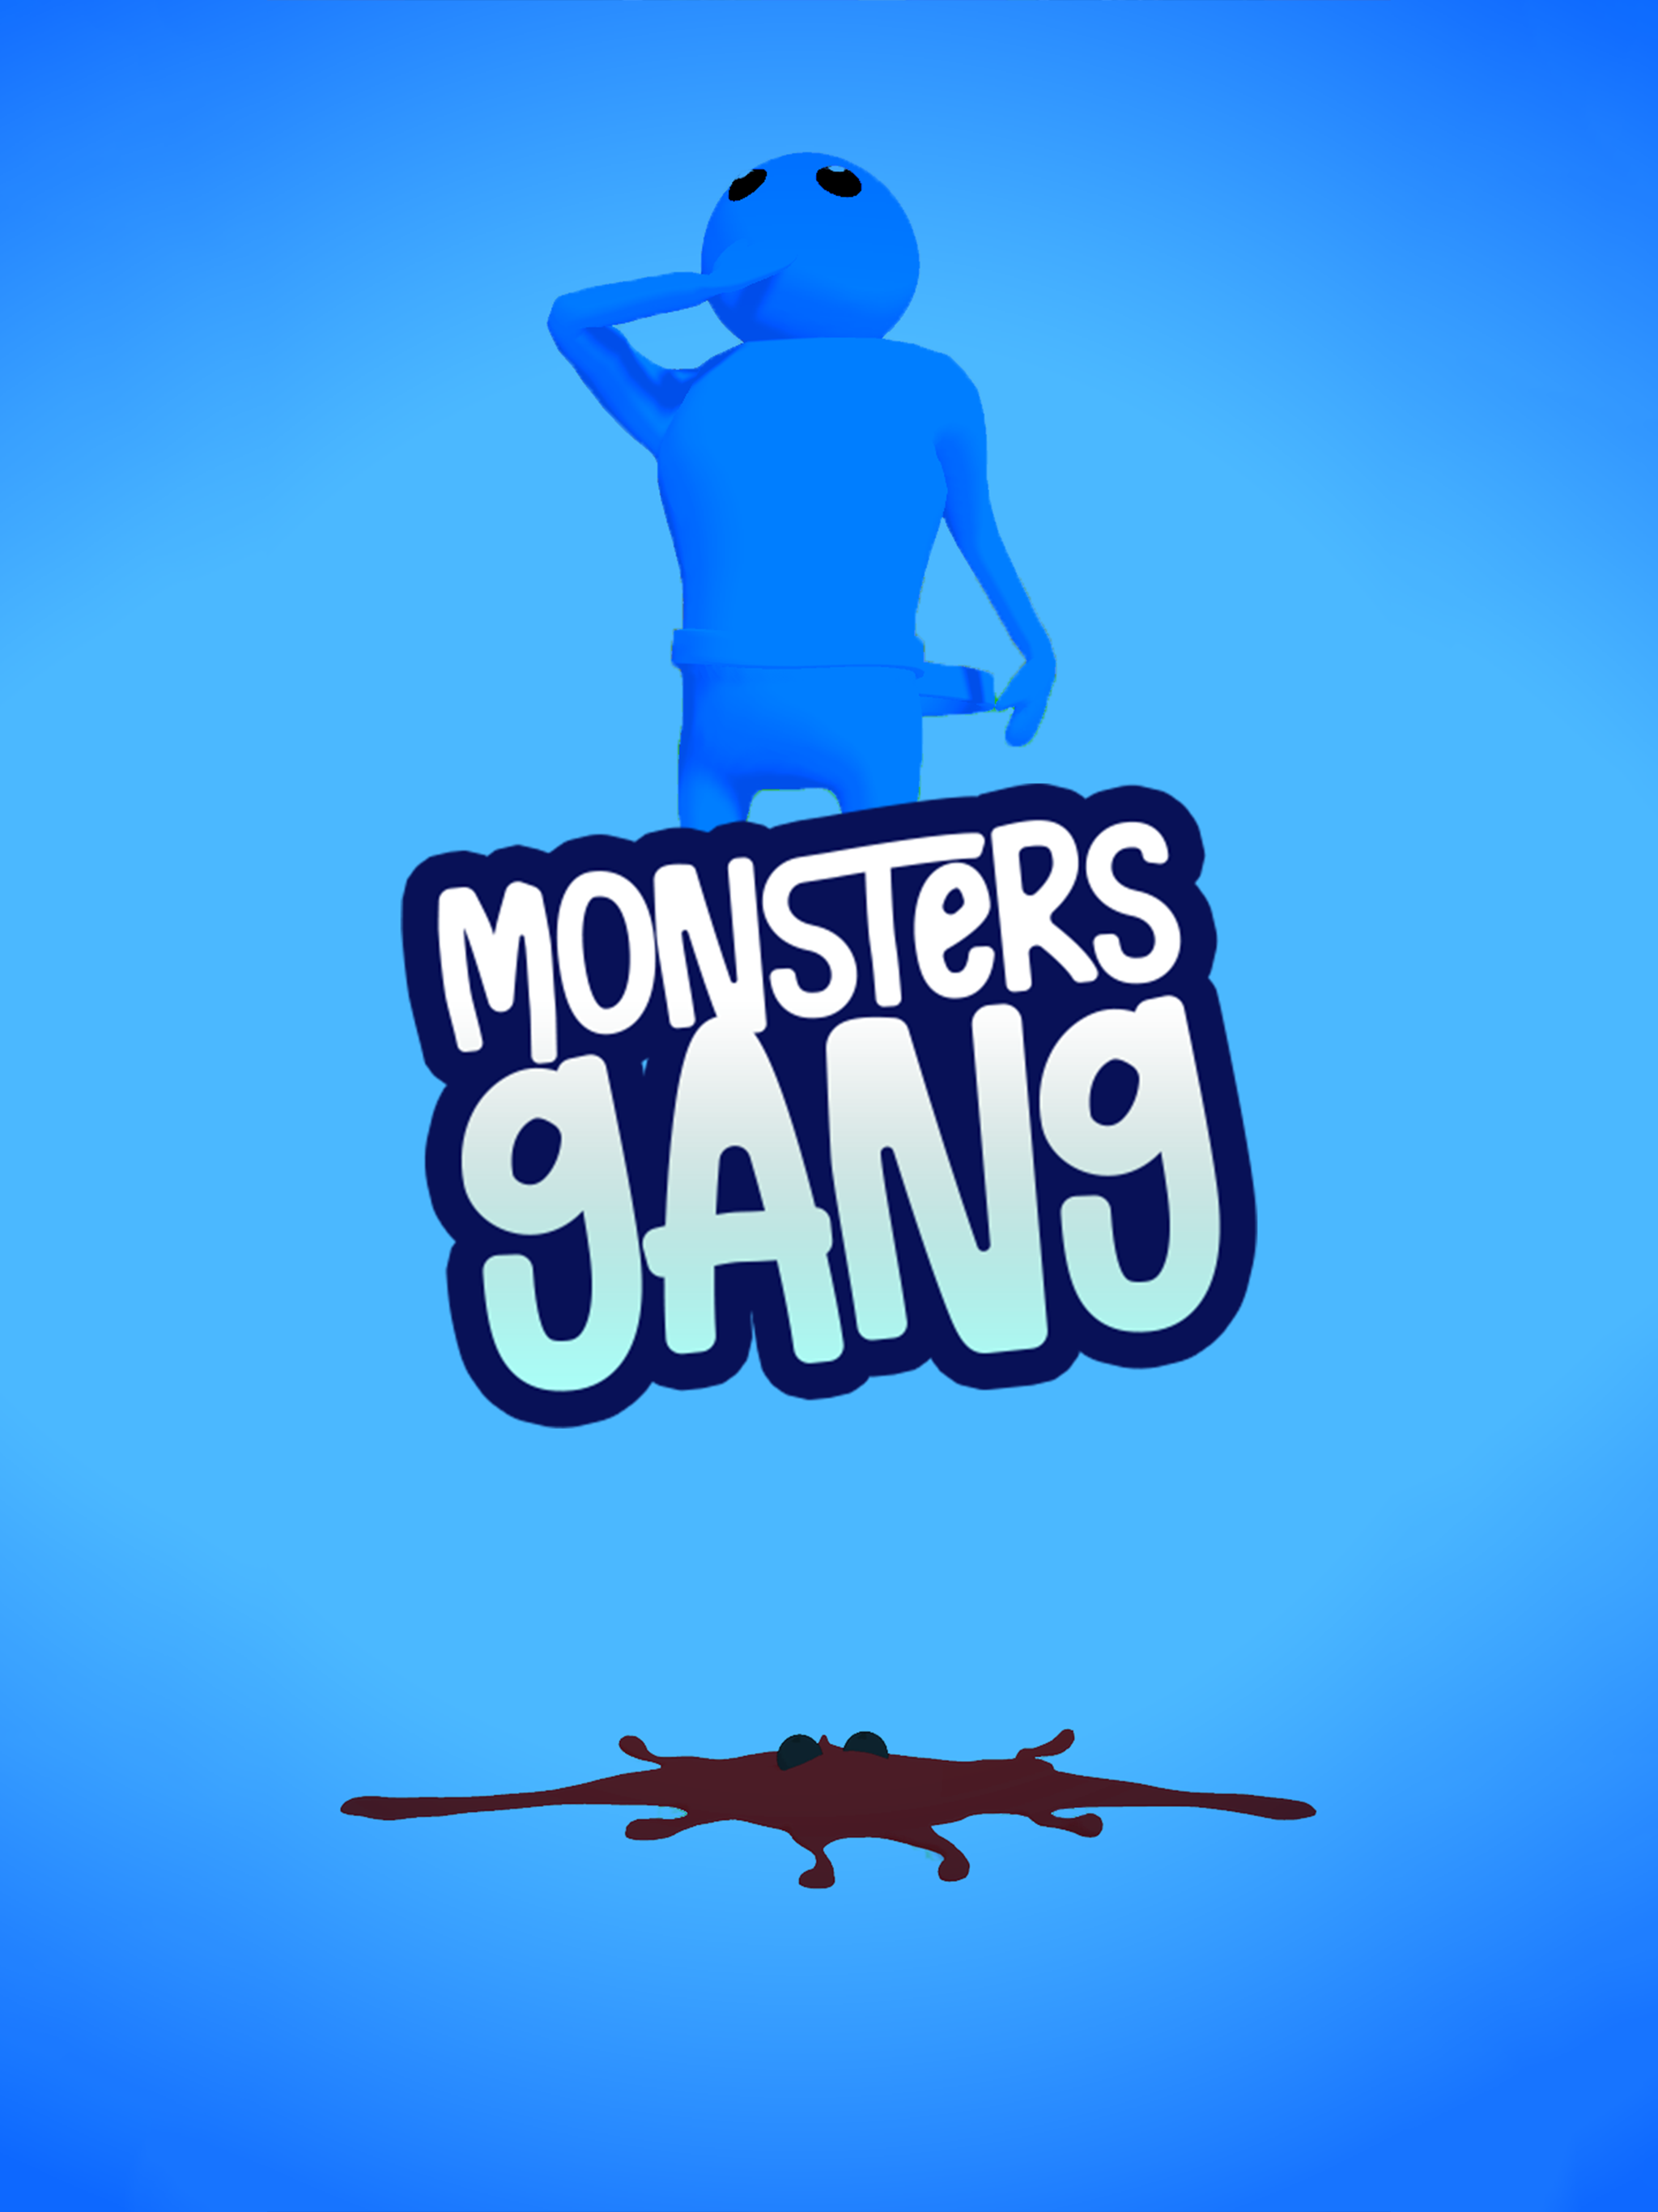 Baixar & Jogar Monsters Gang 3D: Jogo de Luta no PC & Mac (Emulador)